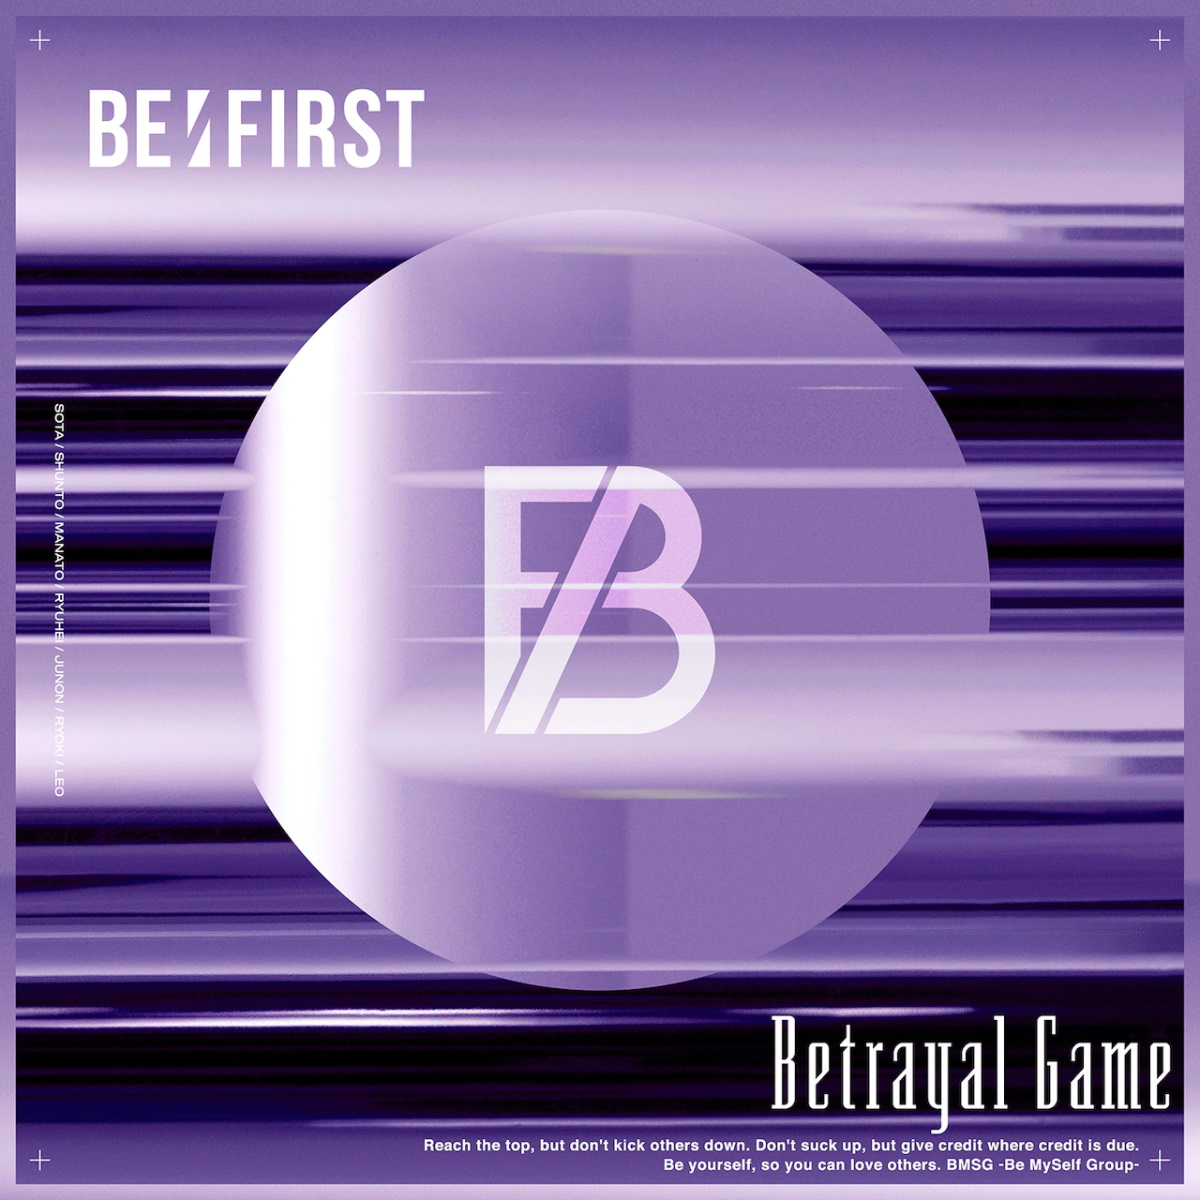 『BE:FIRST - Betrayal Game 歌詞』収録の『Betrayal Game』ジャケット